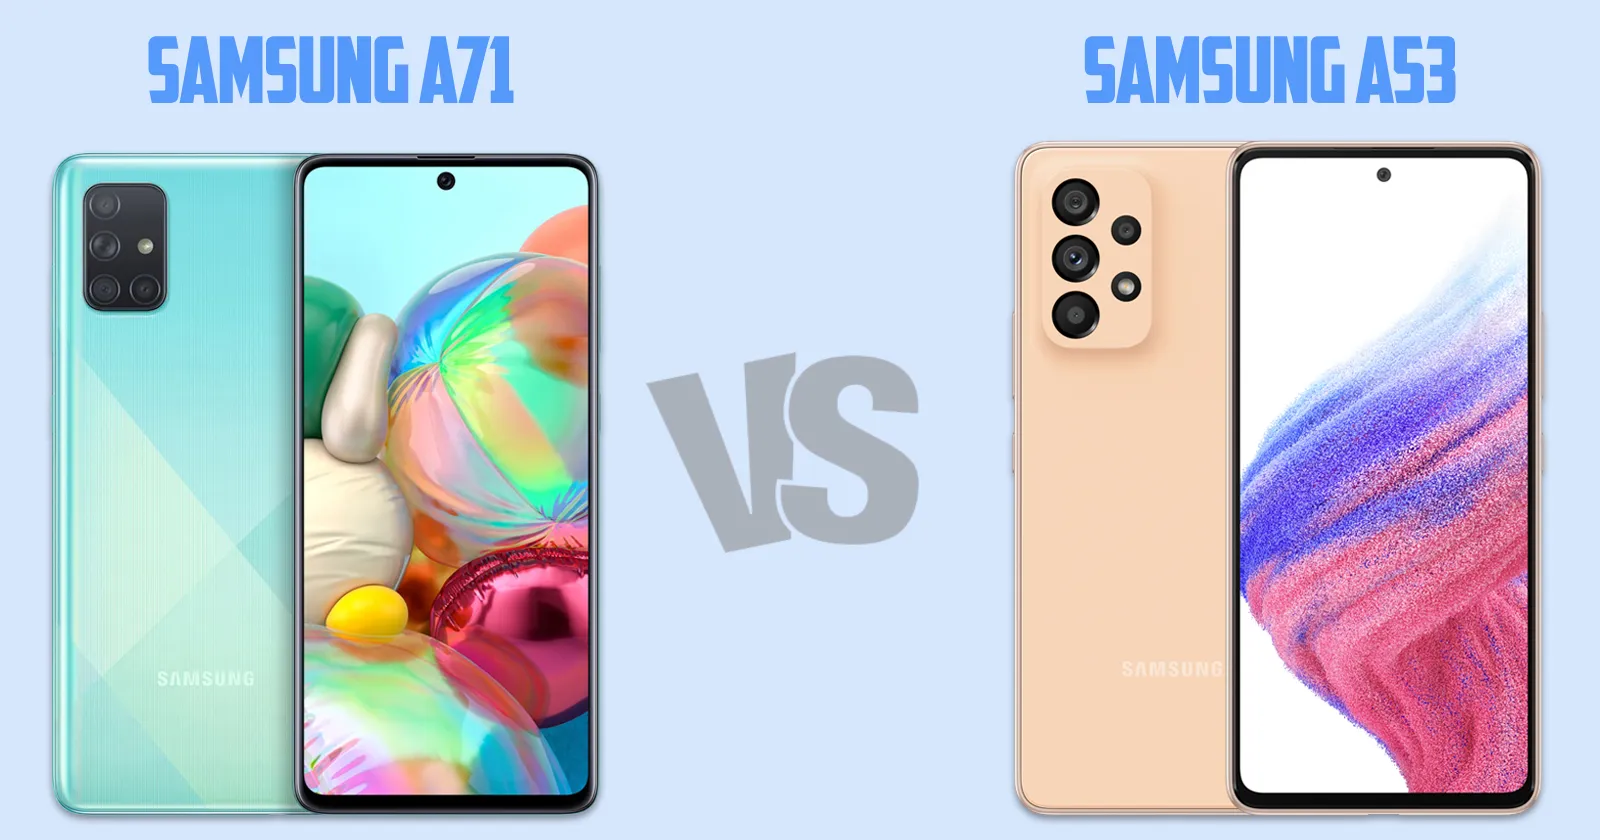 Samsung Galaxy A71 vs Samsung Galaxy A53 [ Full Comparison ]